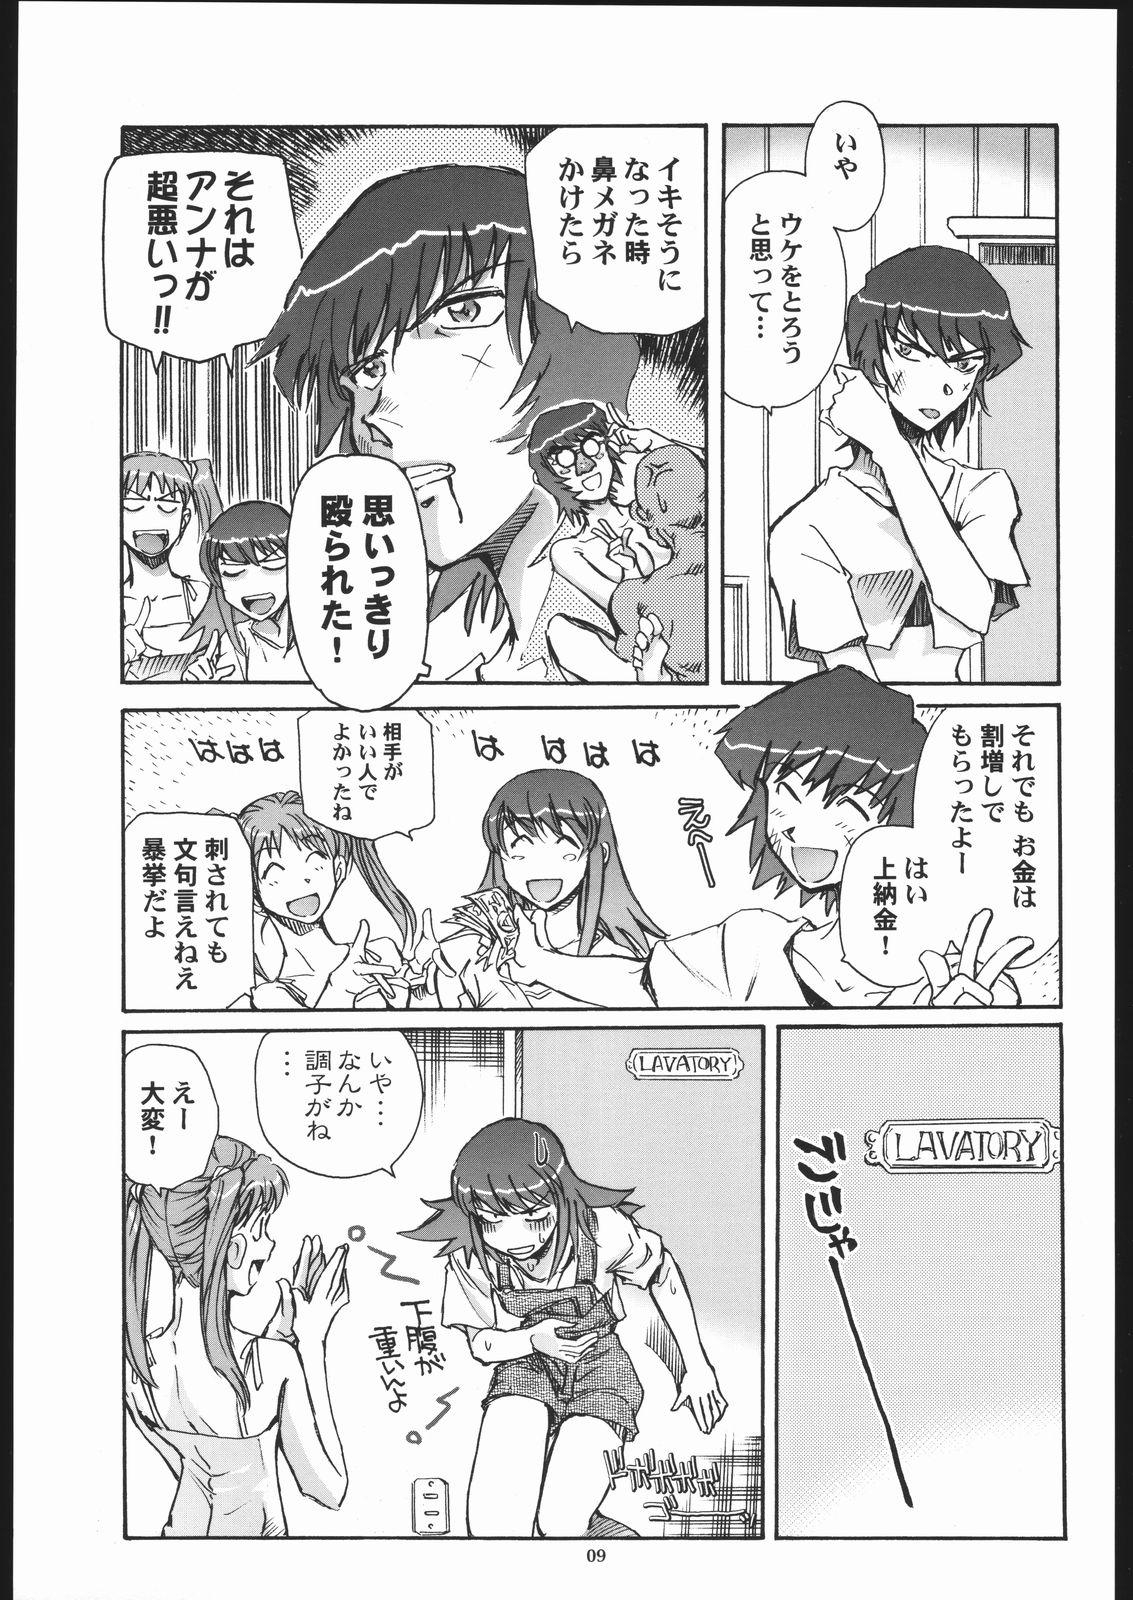 Banging Sora Kara Koboreta Sugoi Shiru - Kaleido star Pussyfucking - Page 8